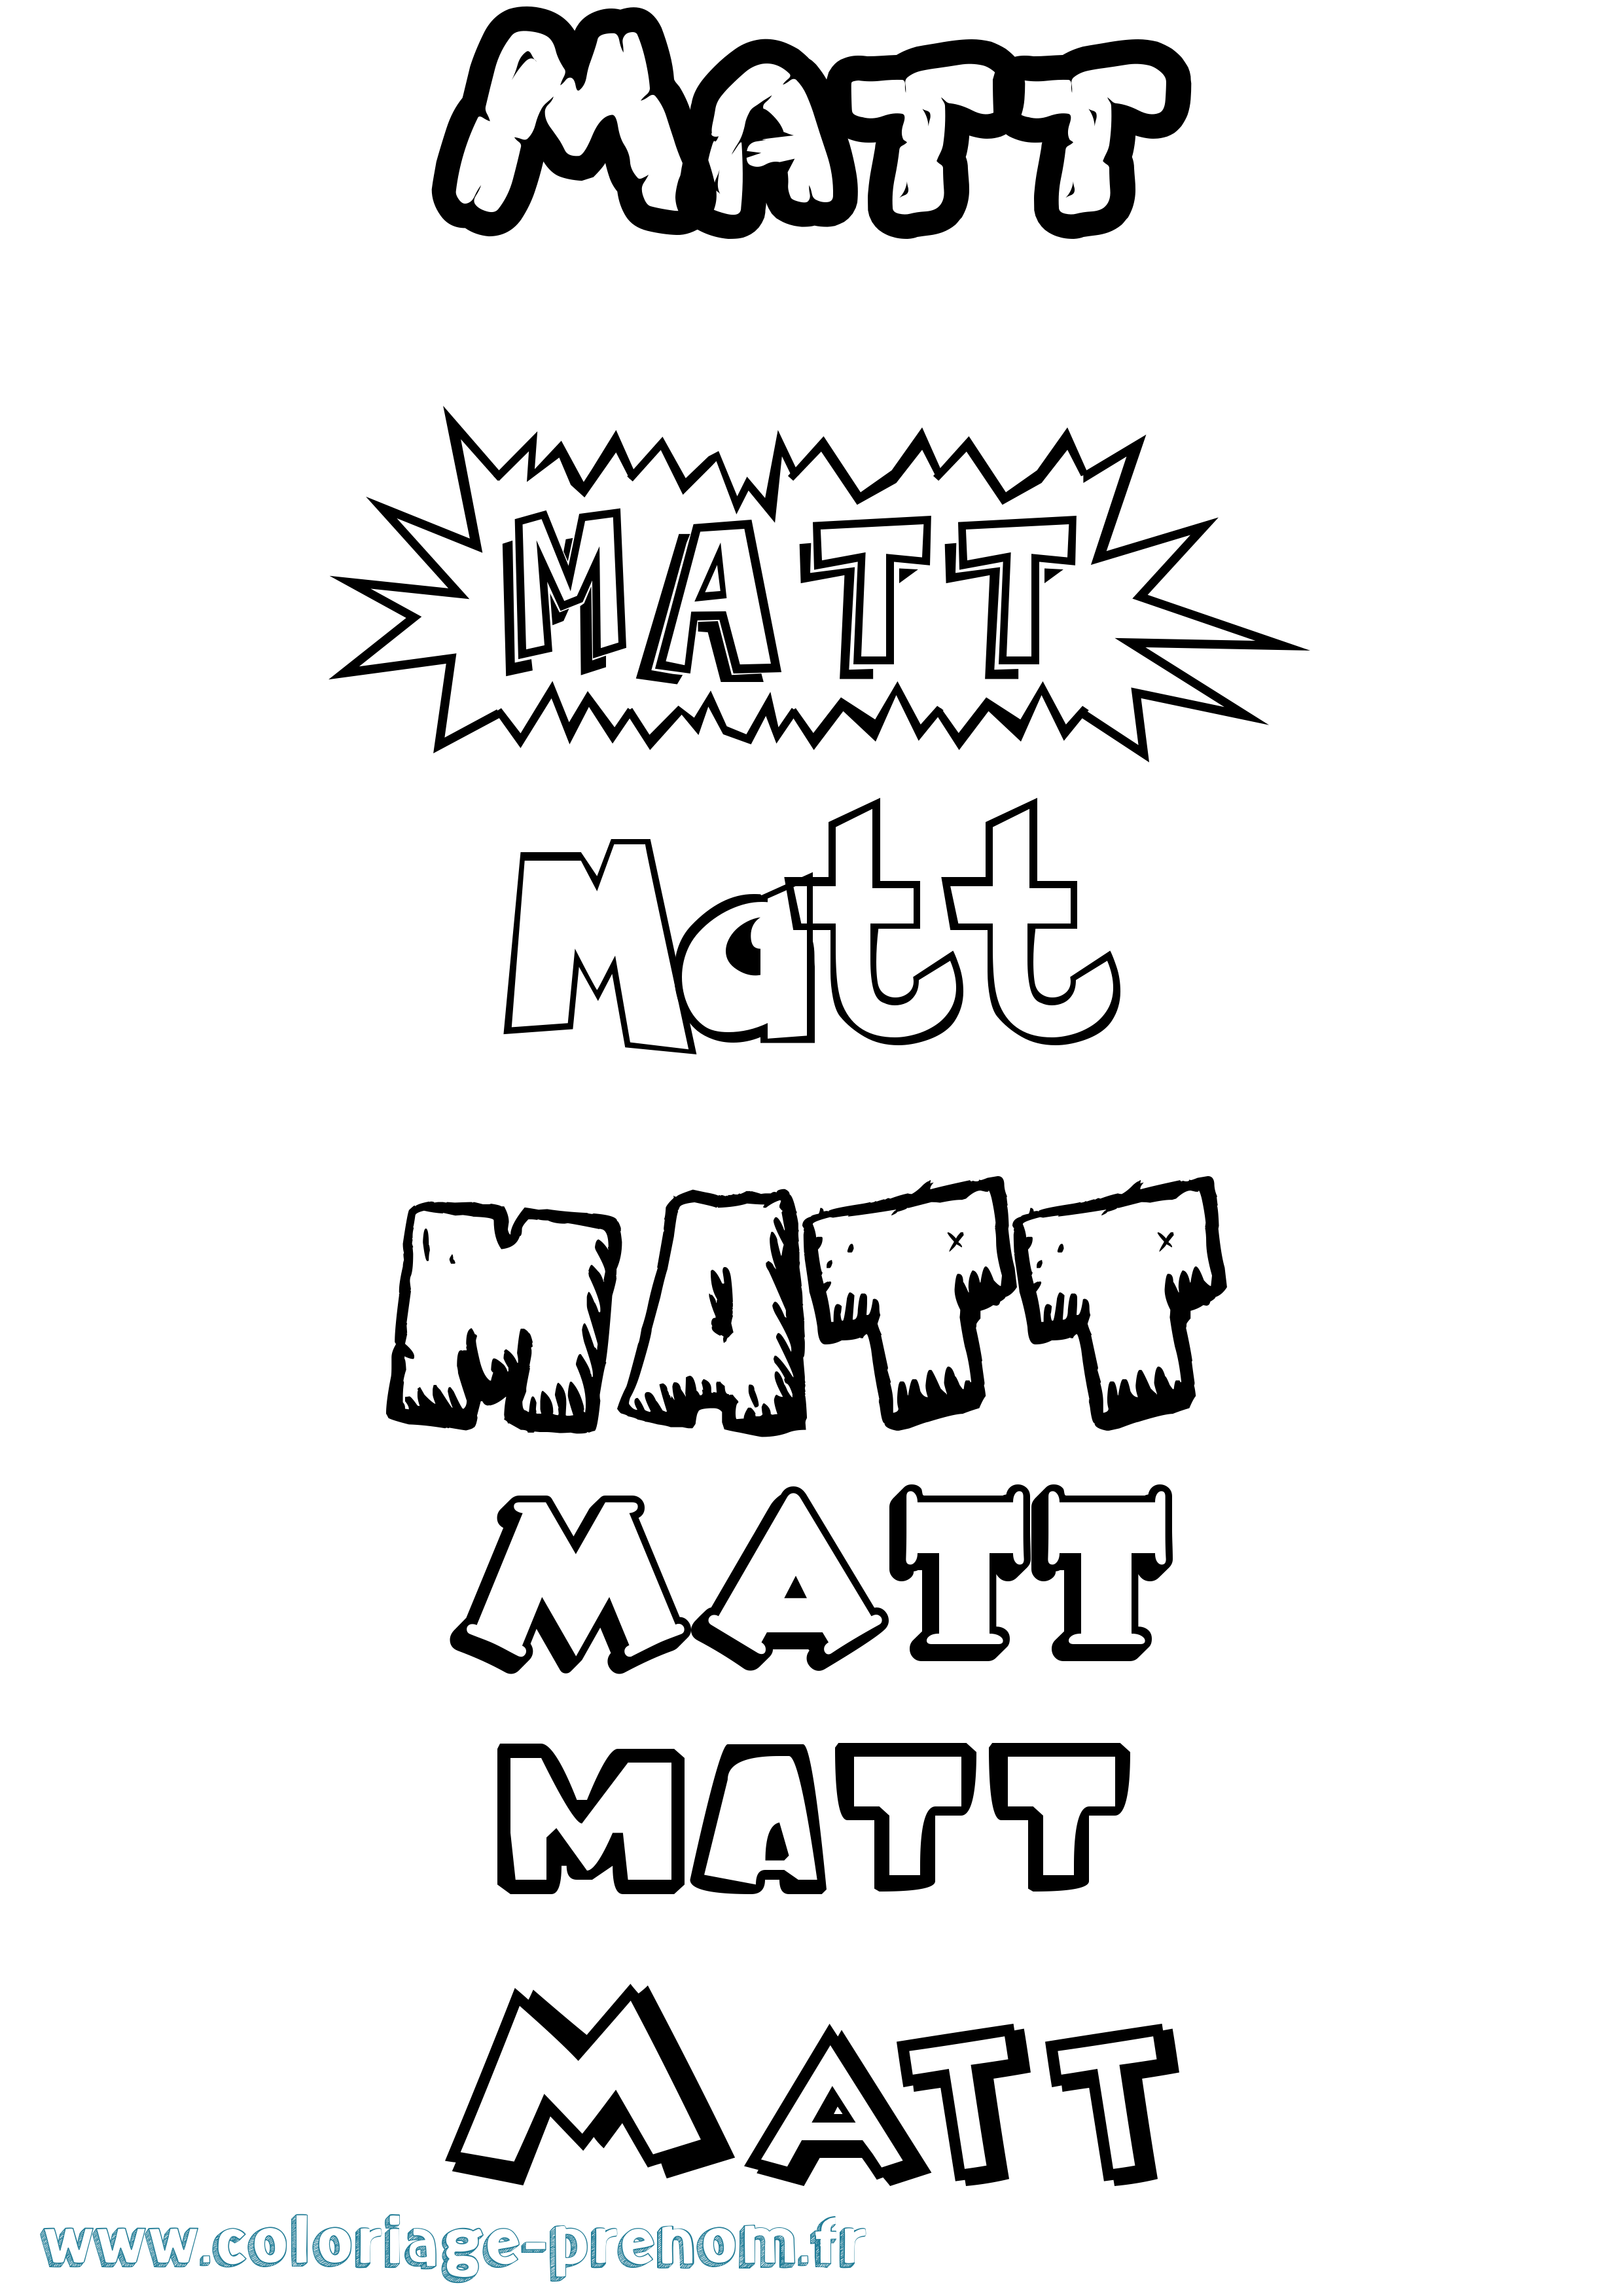 Coloriage prénom Matt